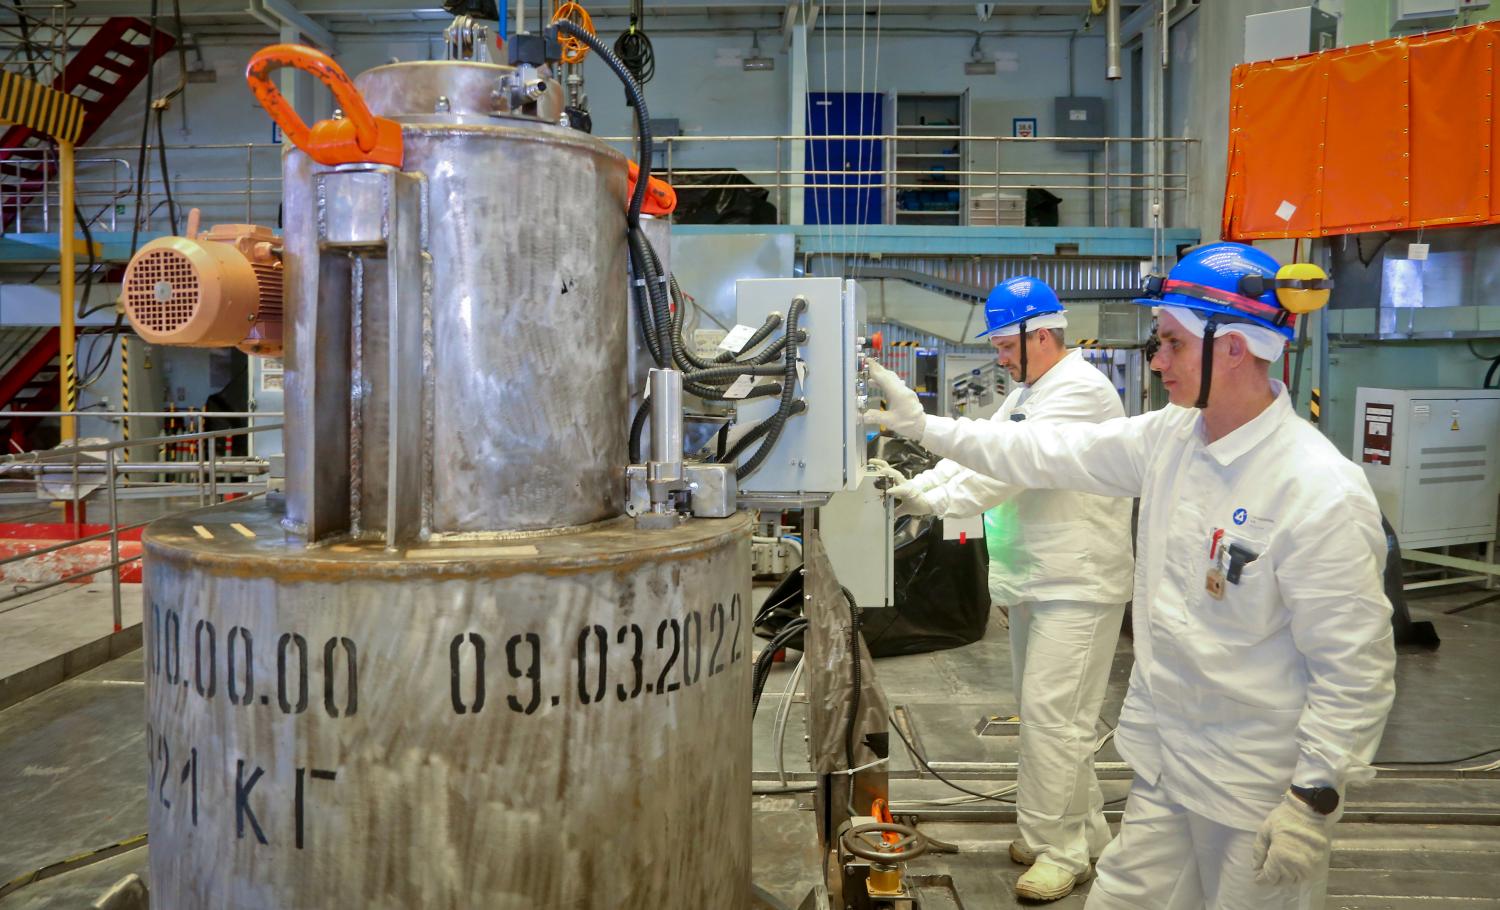 Смоленская АЭС отправила первую партию ценного изотопа кобальта-60